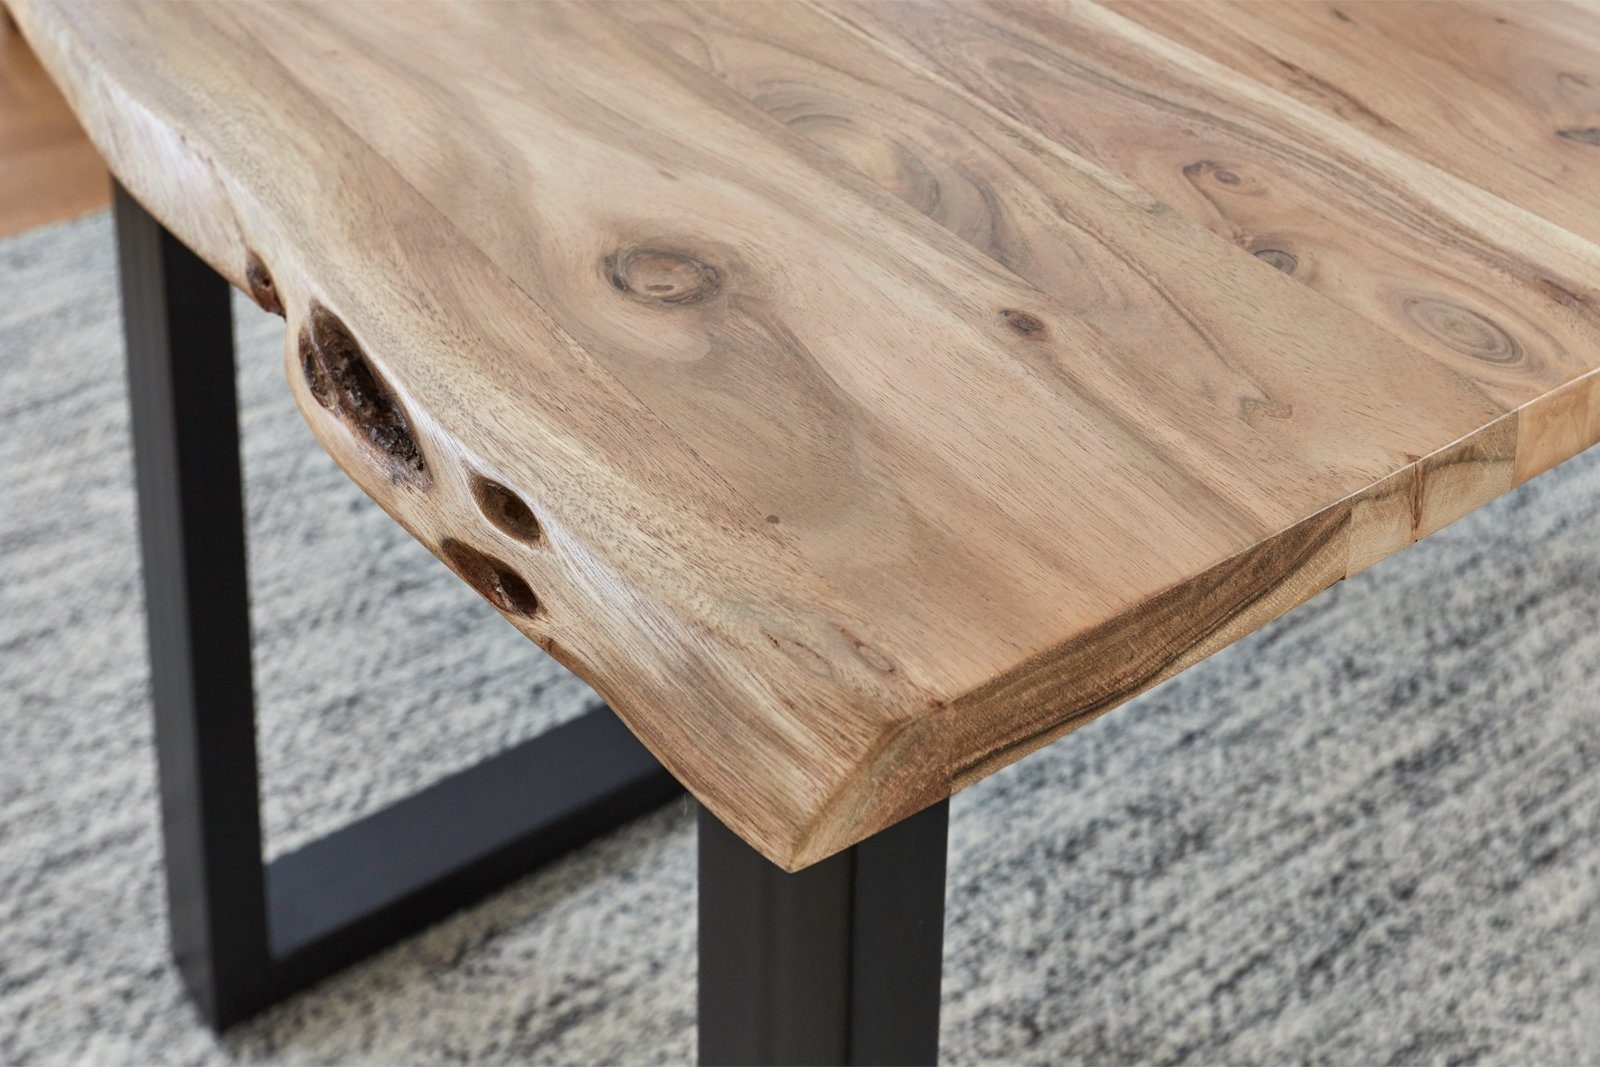 Baumkantentisch Lubin, Stärke Naturfarben Tischplatte Massivholz, Schwarz Akazie Junado® Baumkante | natürliche 26mm,